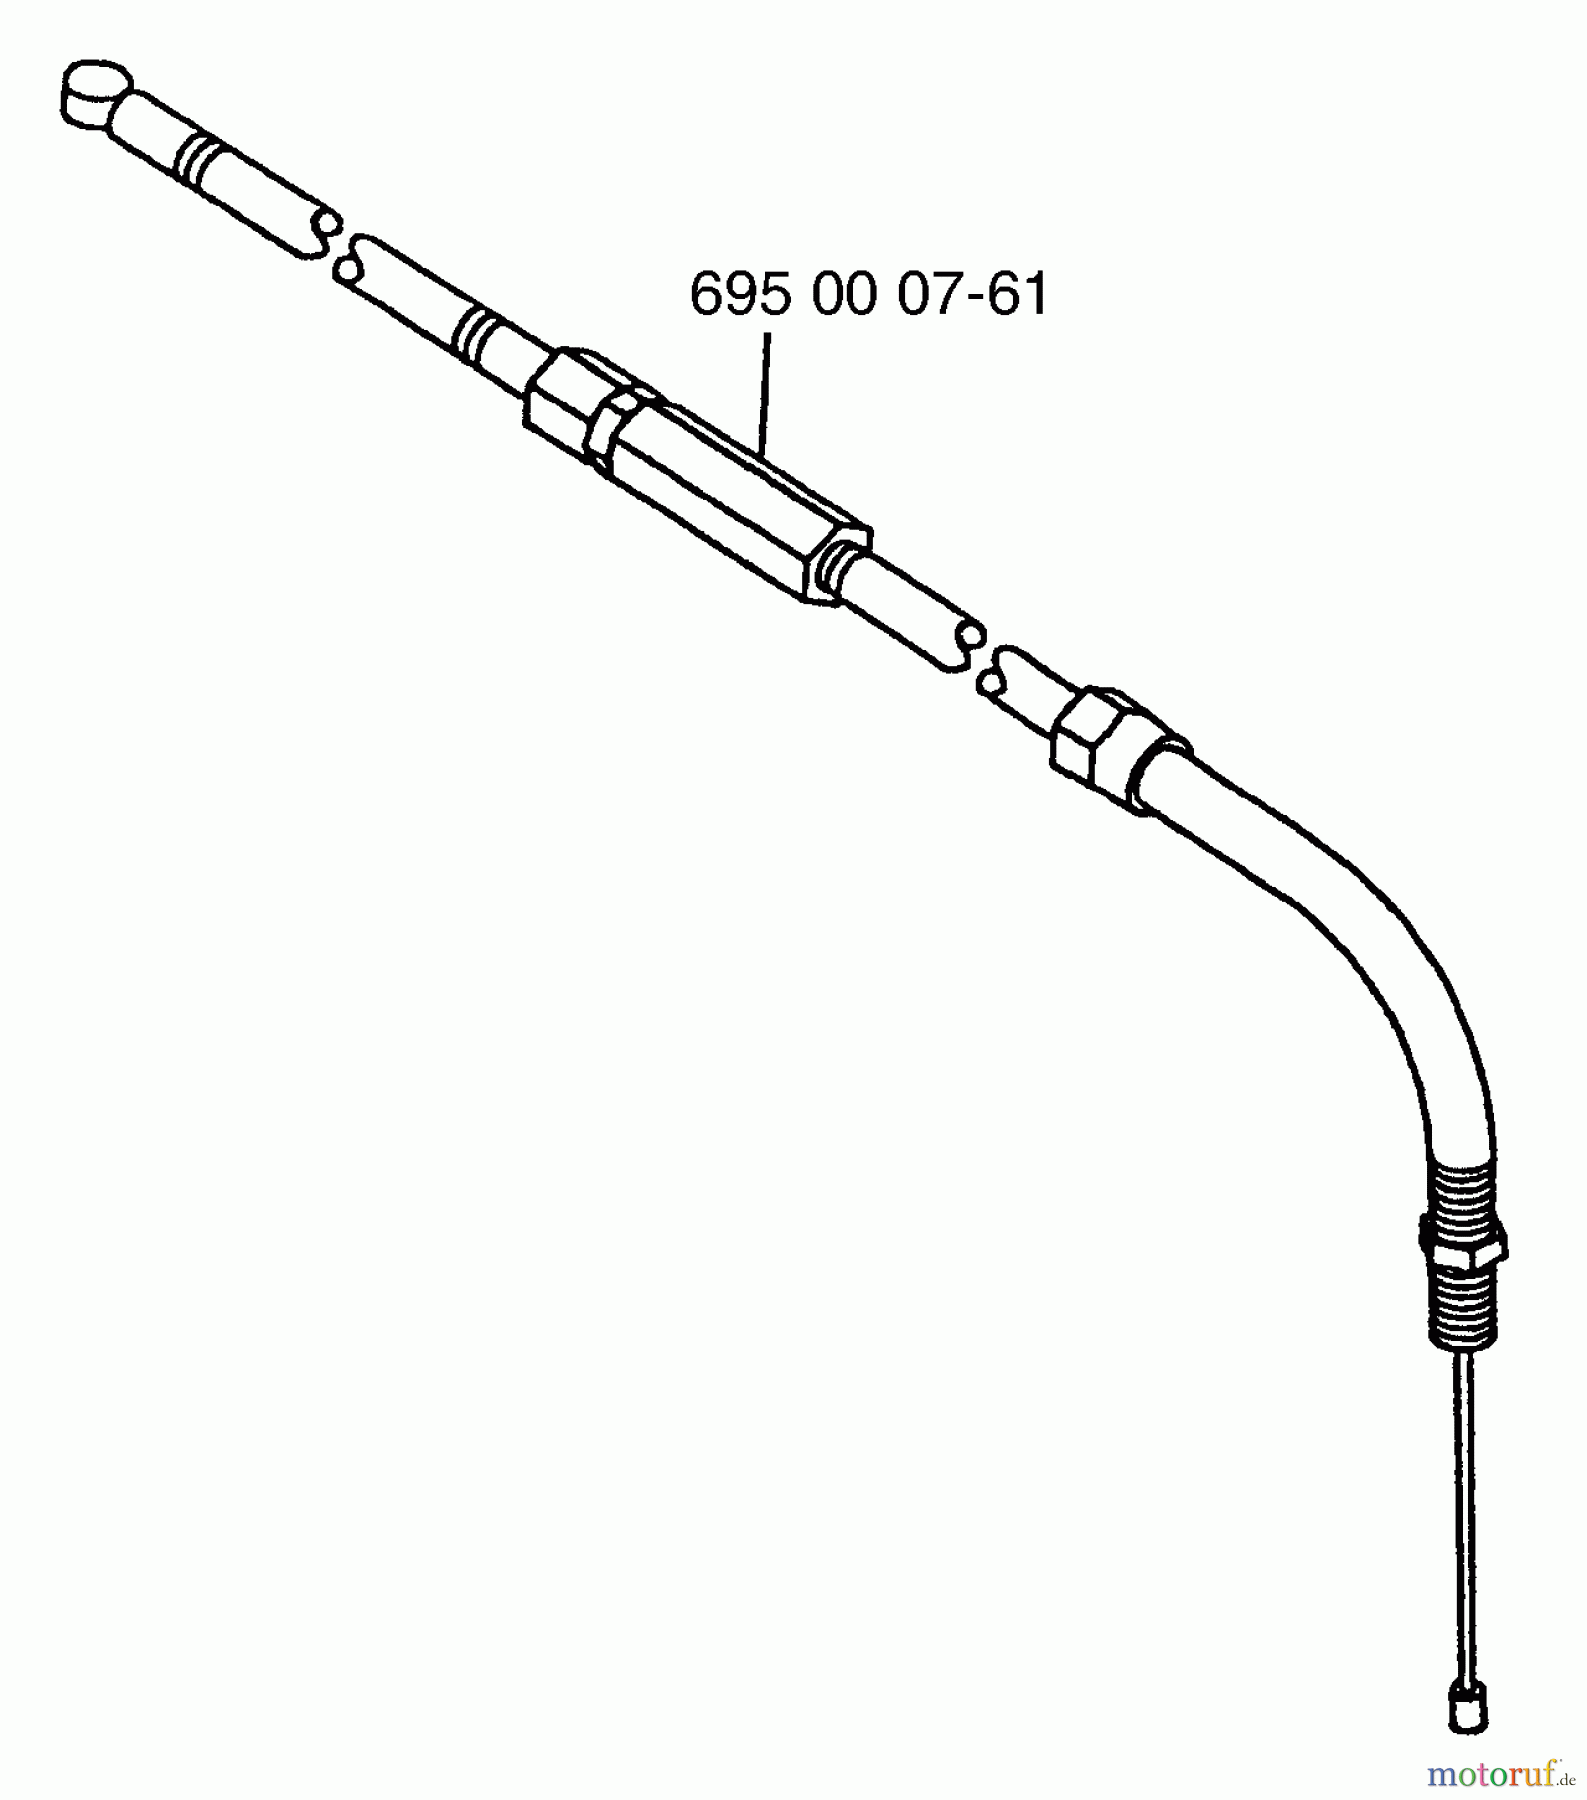  Husqvarna Bläser / Sauger / Häcksler / Mulchgeräte 145 BF - Husqvarna Backpack Blower (Carb II) (2001-04 & After) (California) Throttle Cable